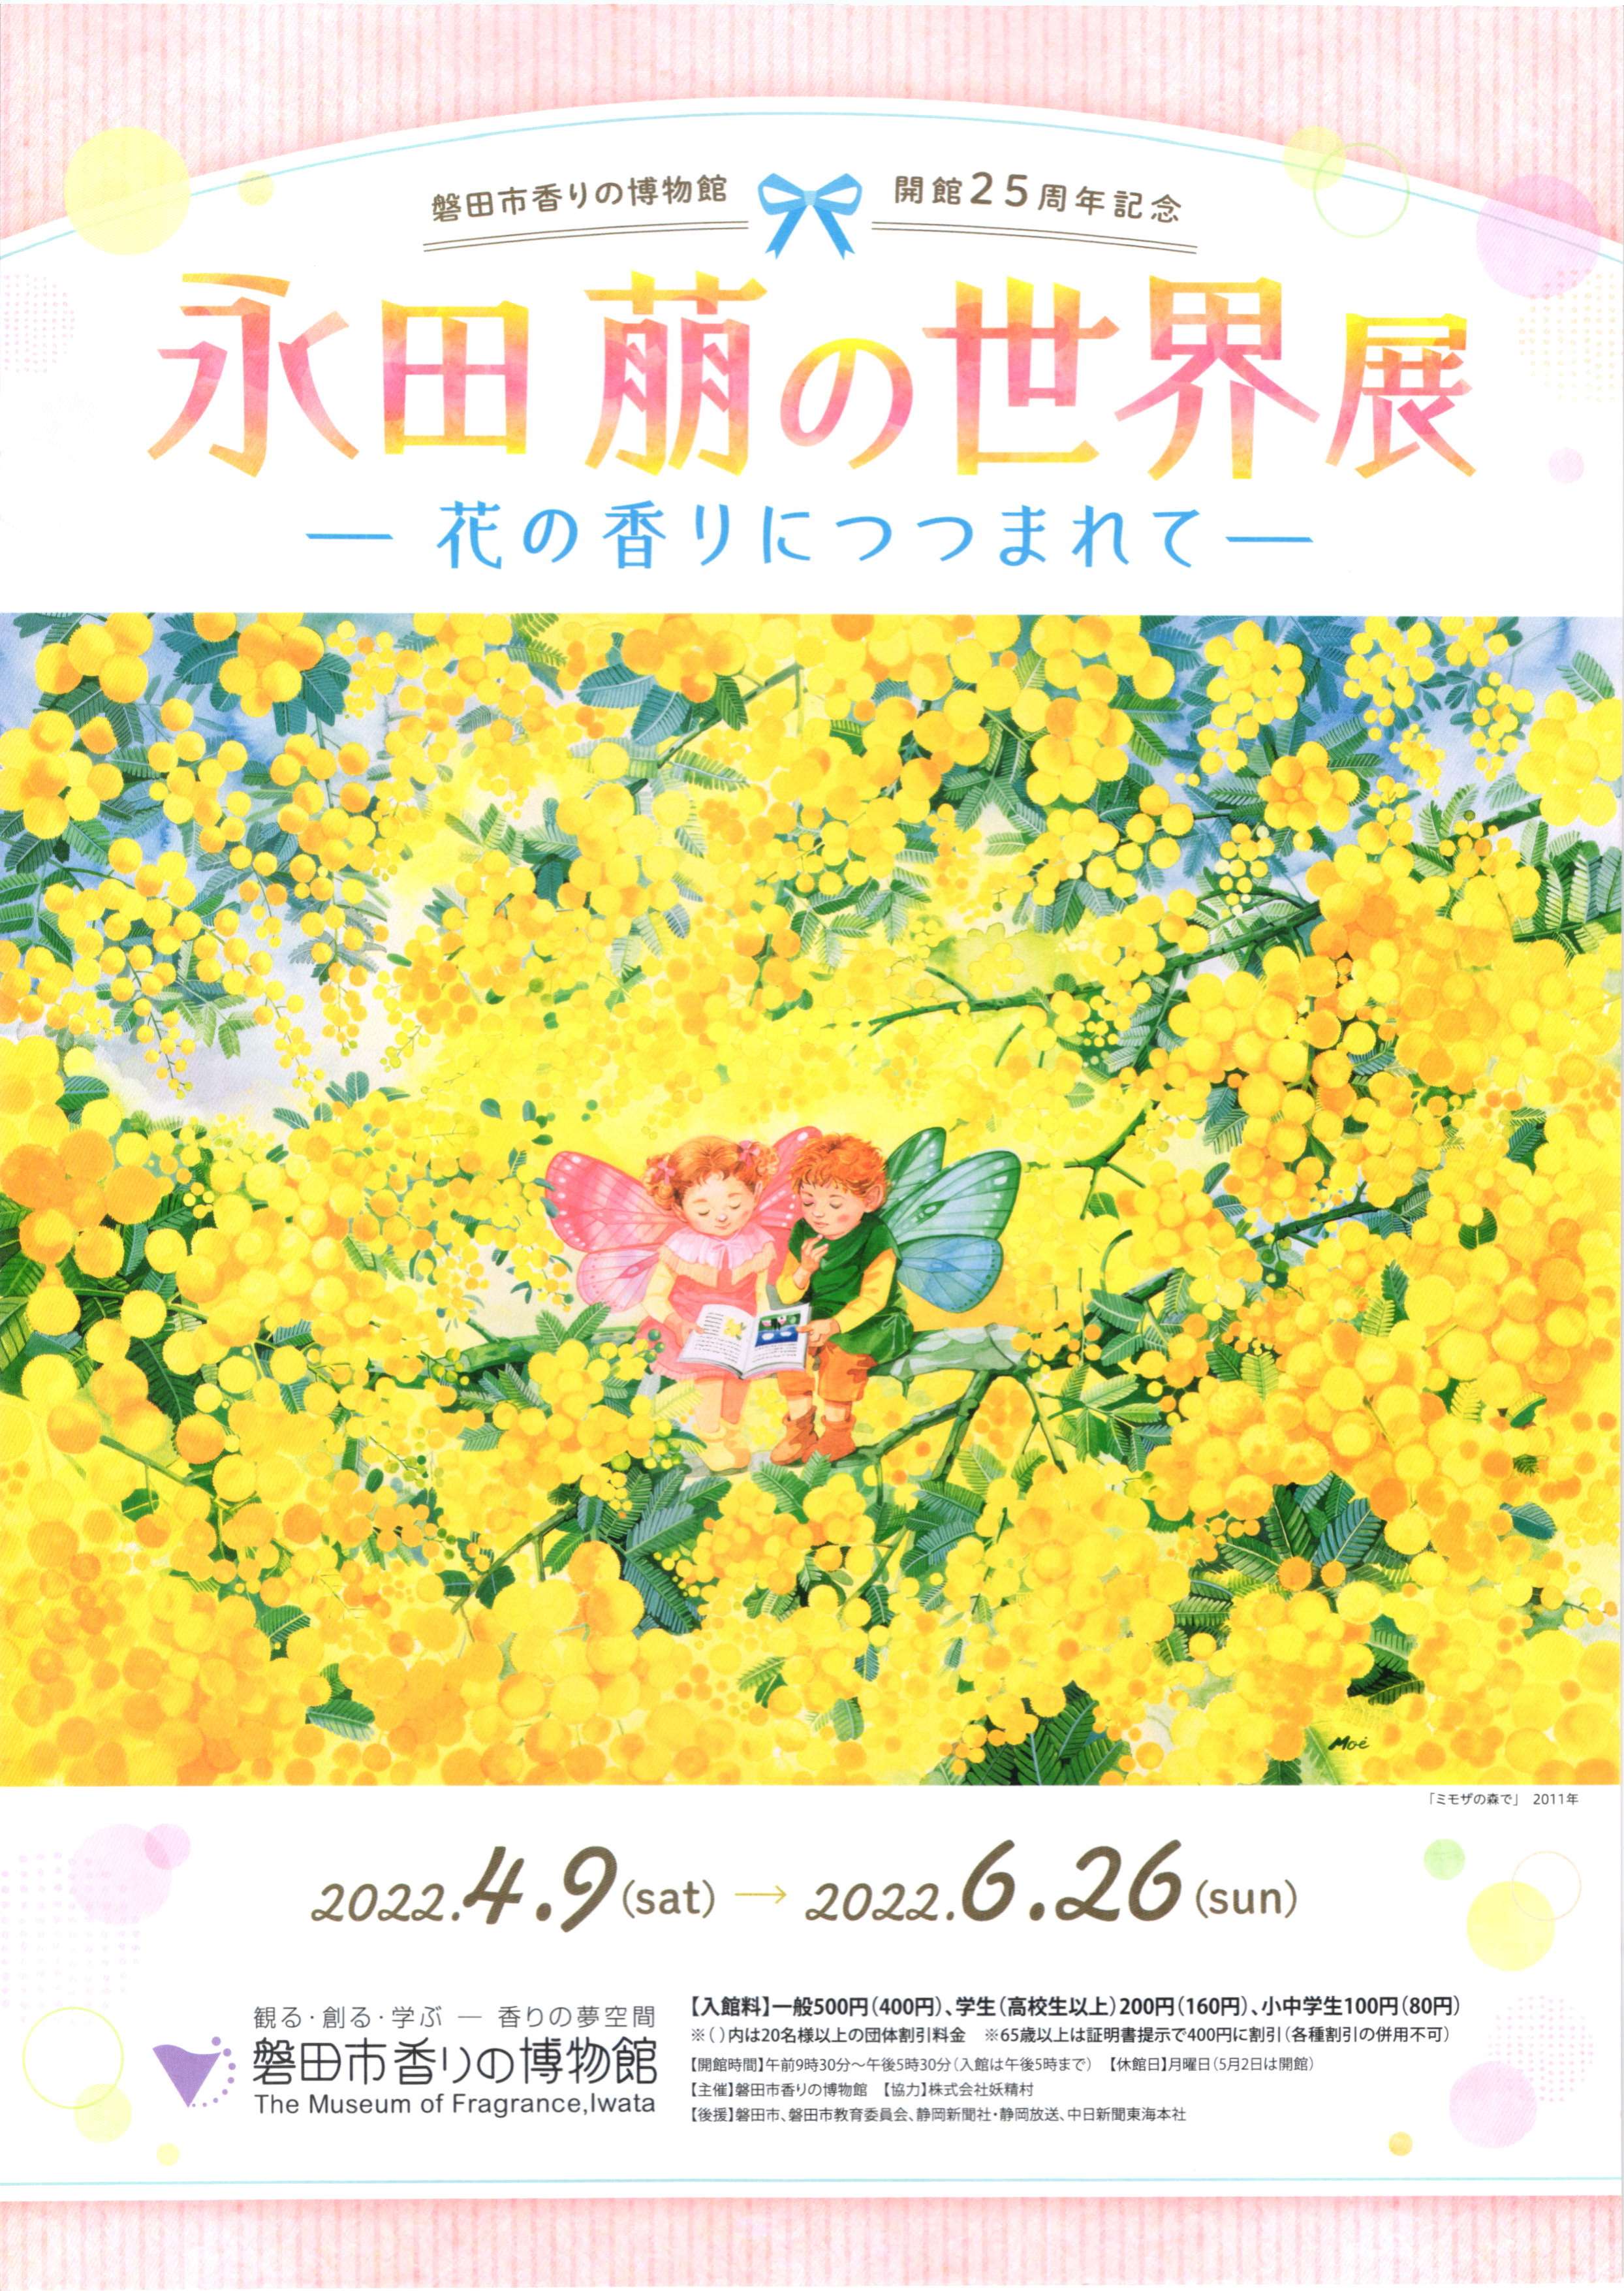  磐田市香りの博物館・開館25周年記念・春季企画展「永田萠の世界展 ～花の香りにつつまれて～」・磐田市香りの博物館